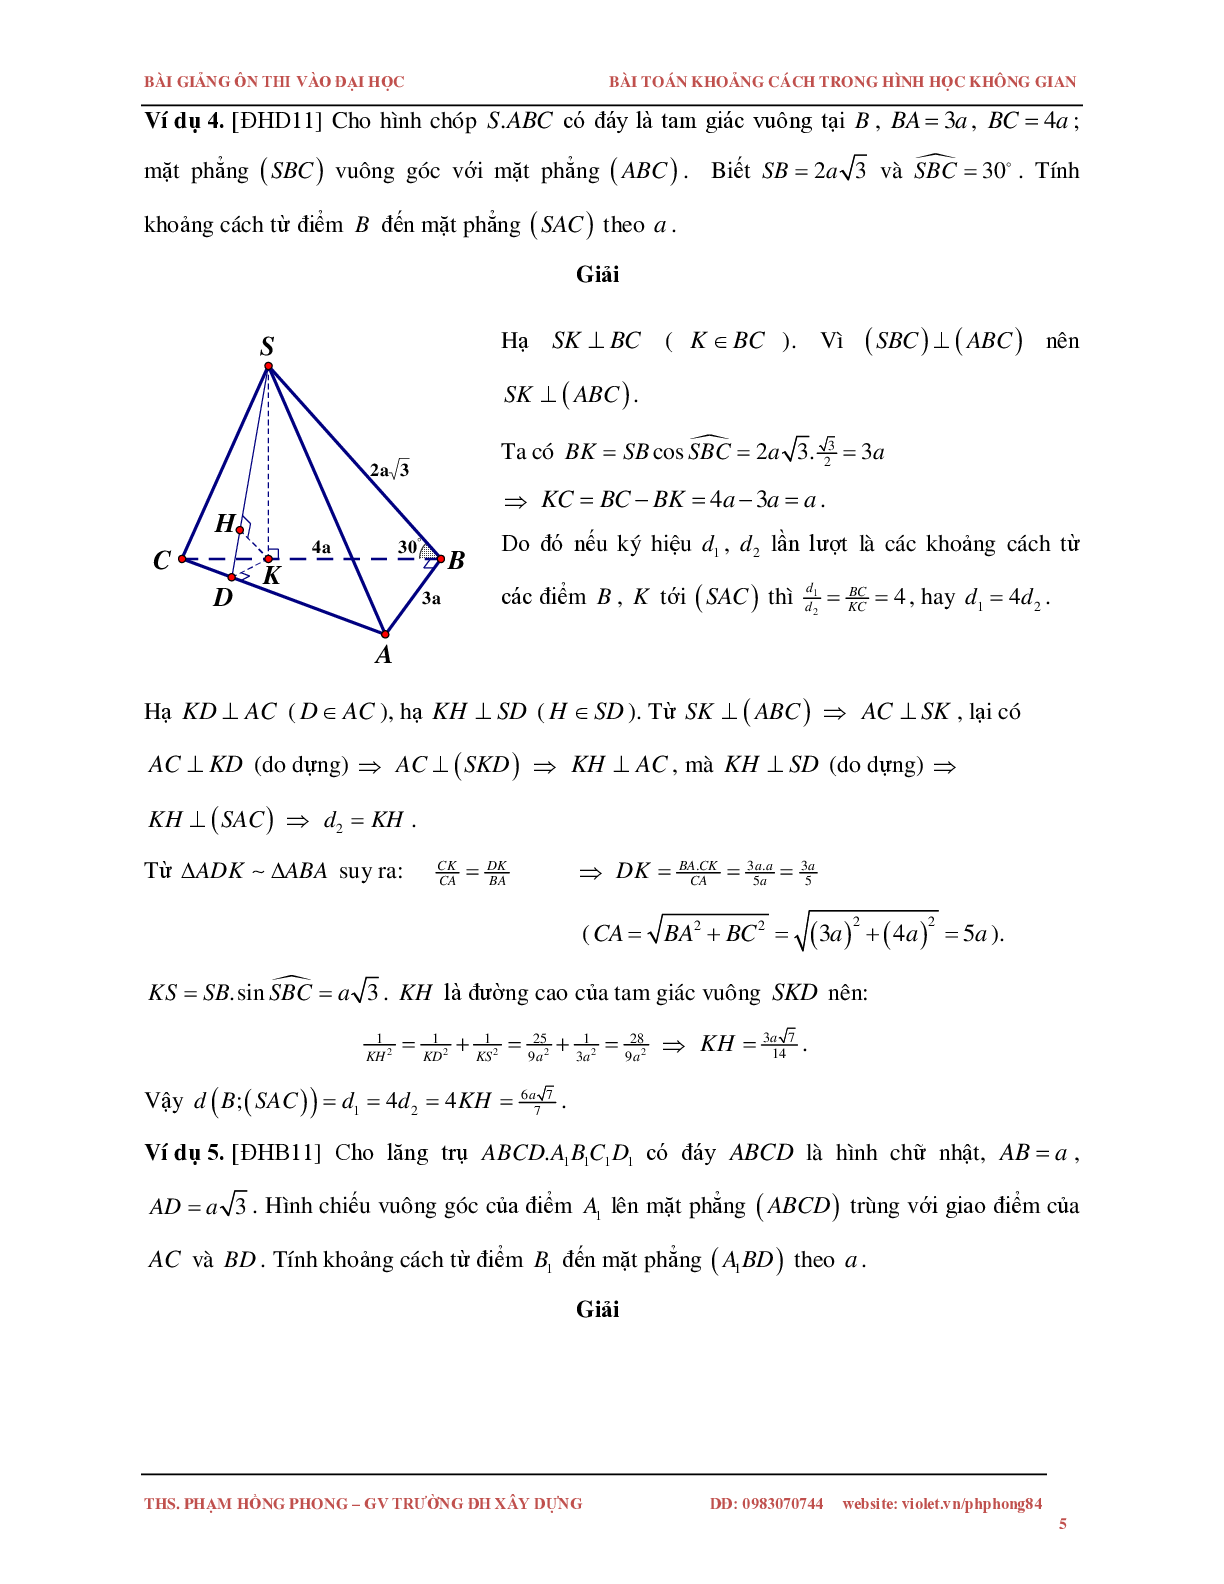 Bài toán về khoảng cách trong không gian (trang 5)